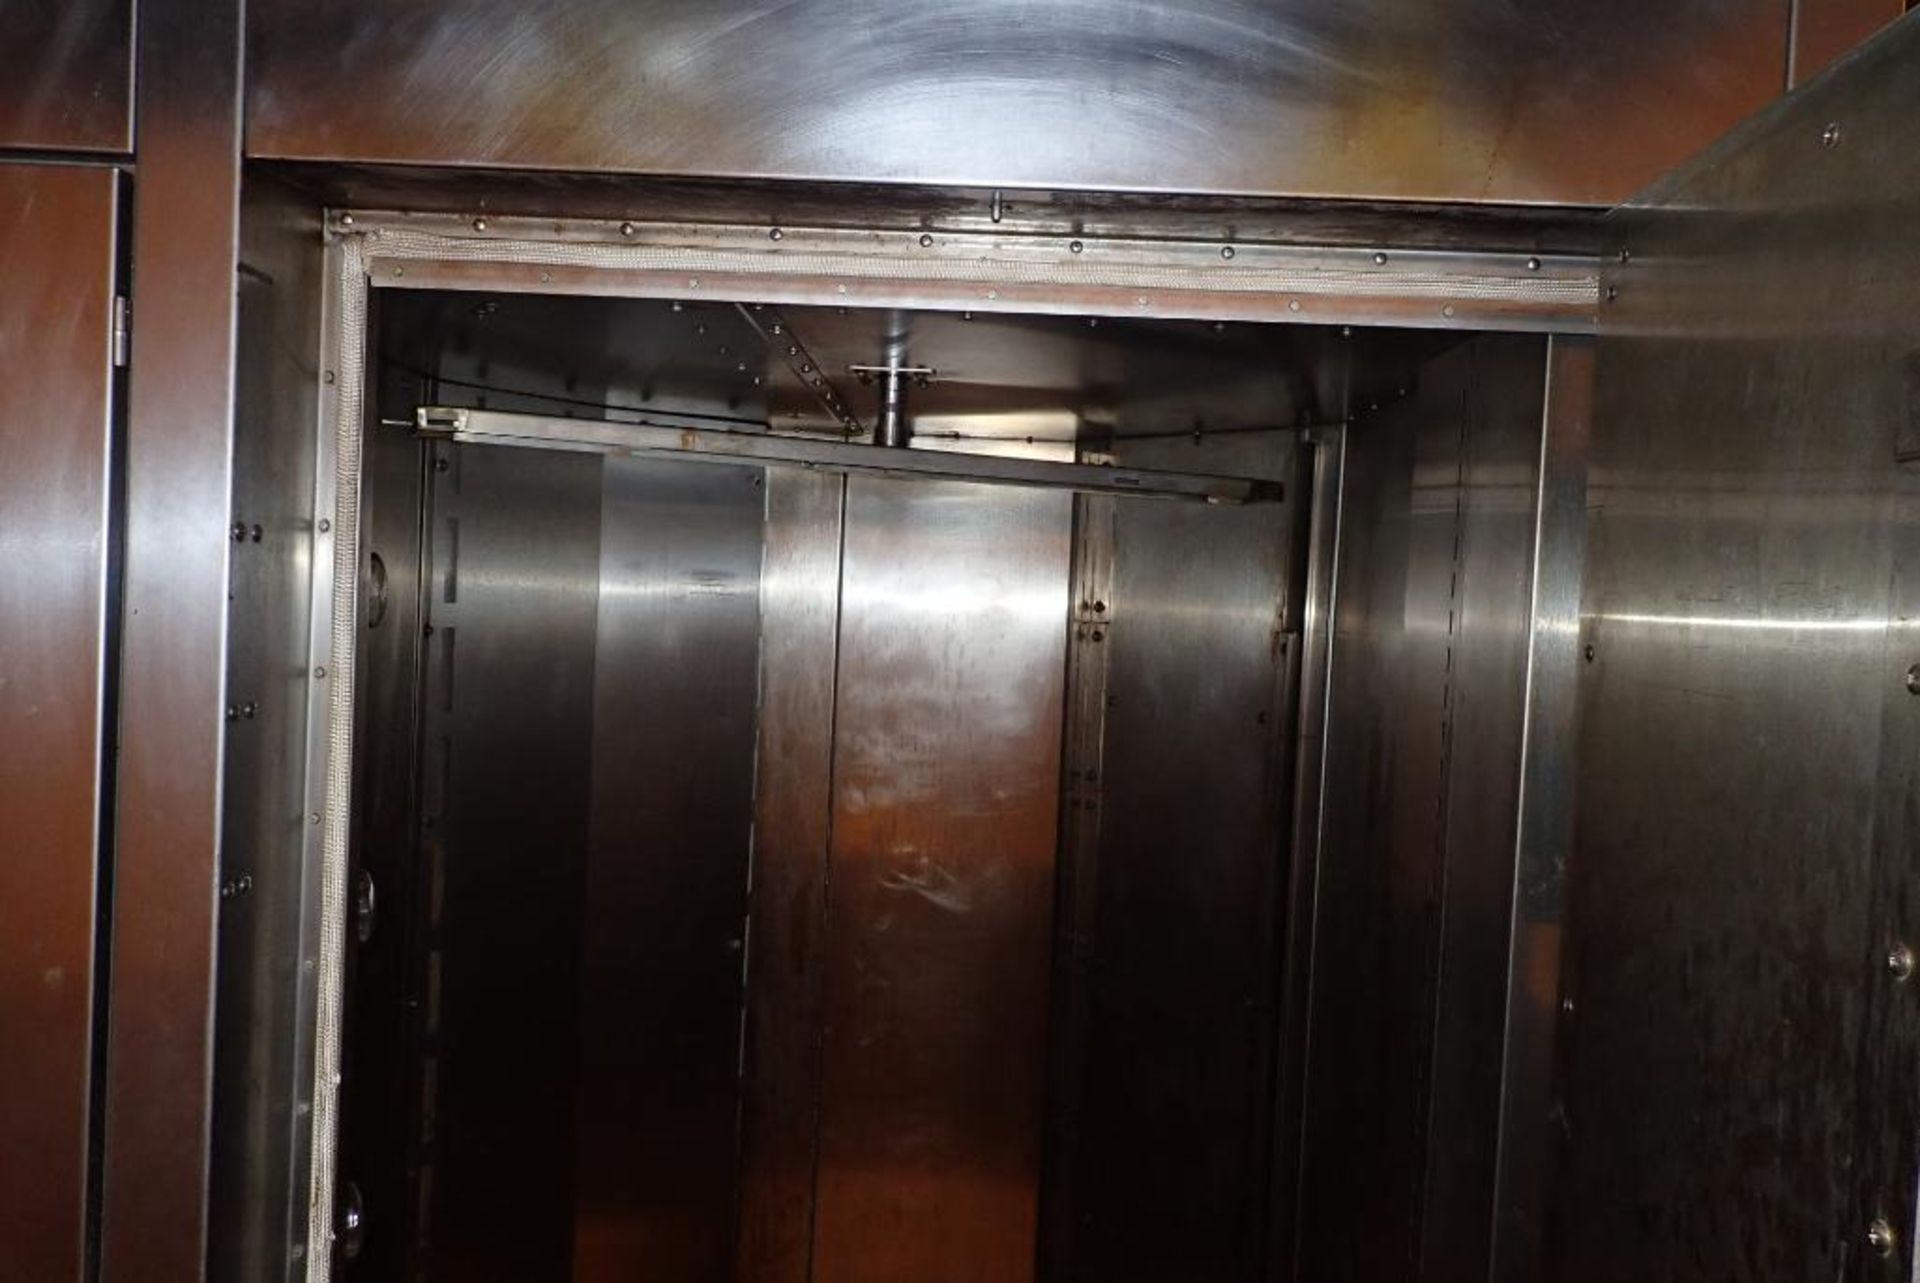 Hobart double rack oven - Image 5 of 16